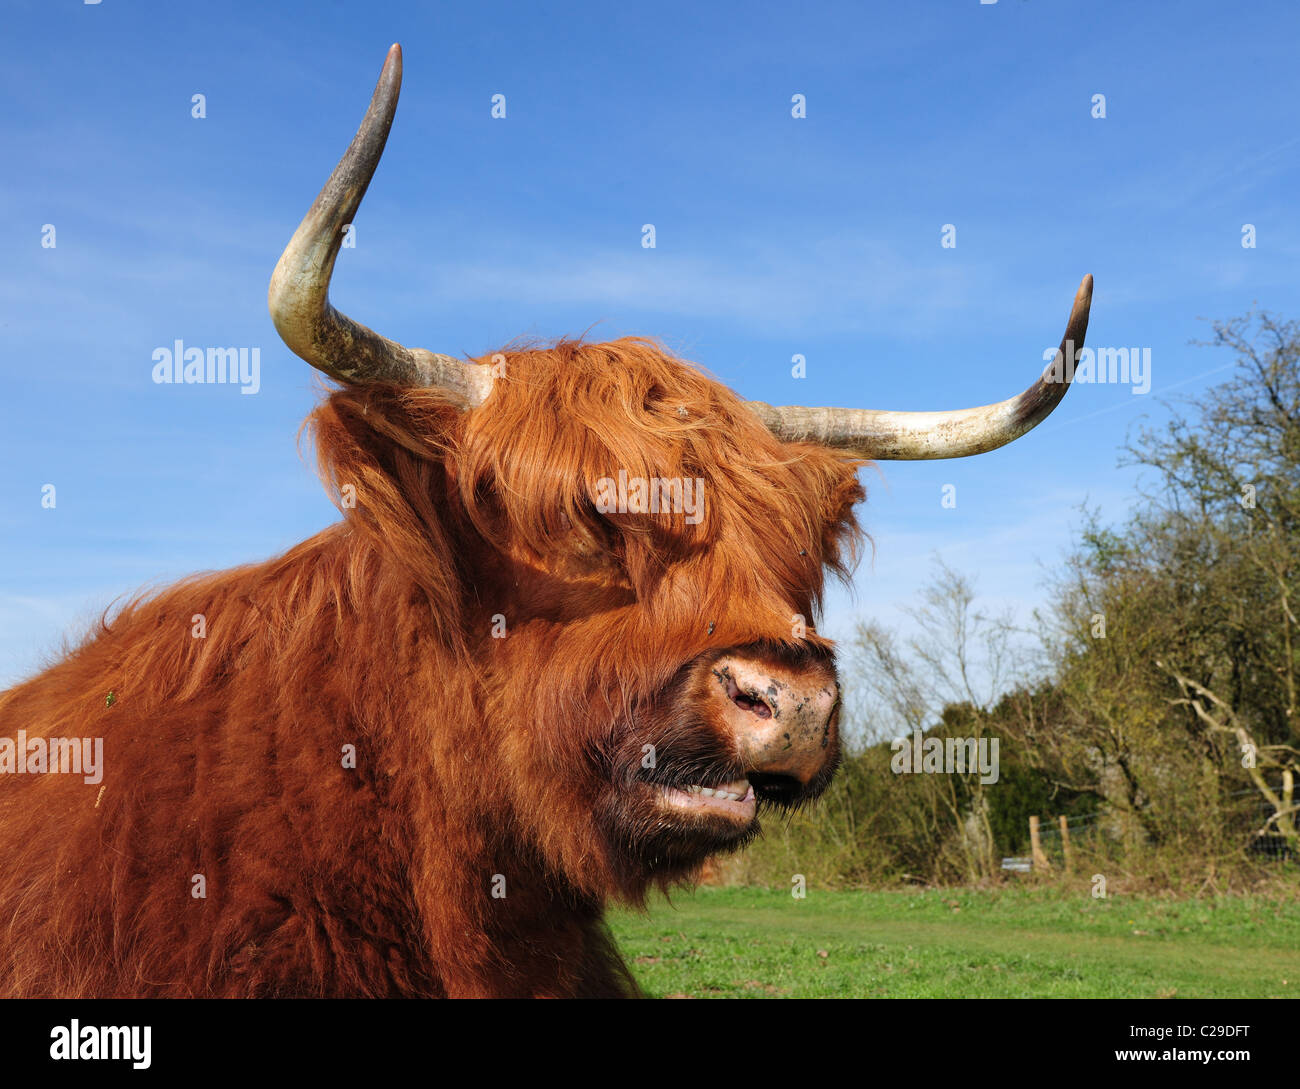 Highland Cattle oder Kyloe. Eine alte schottische Rasse der Rinder mit eleganten langen Hörner und lange Mäntel Stockfoto